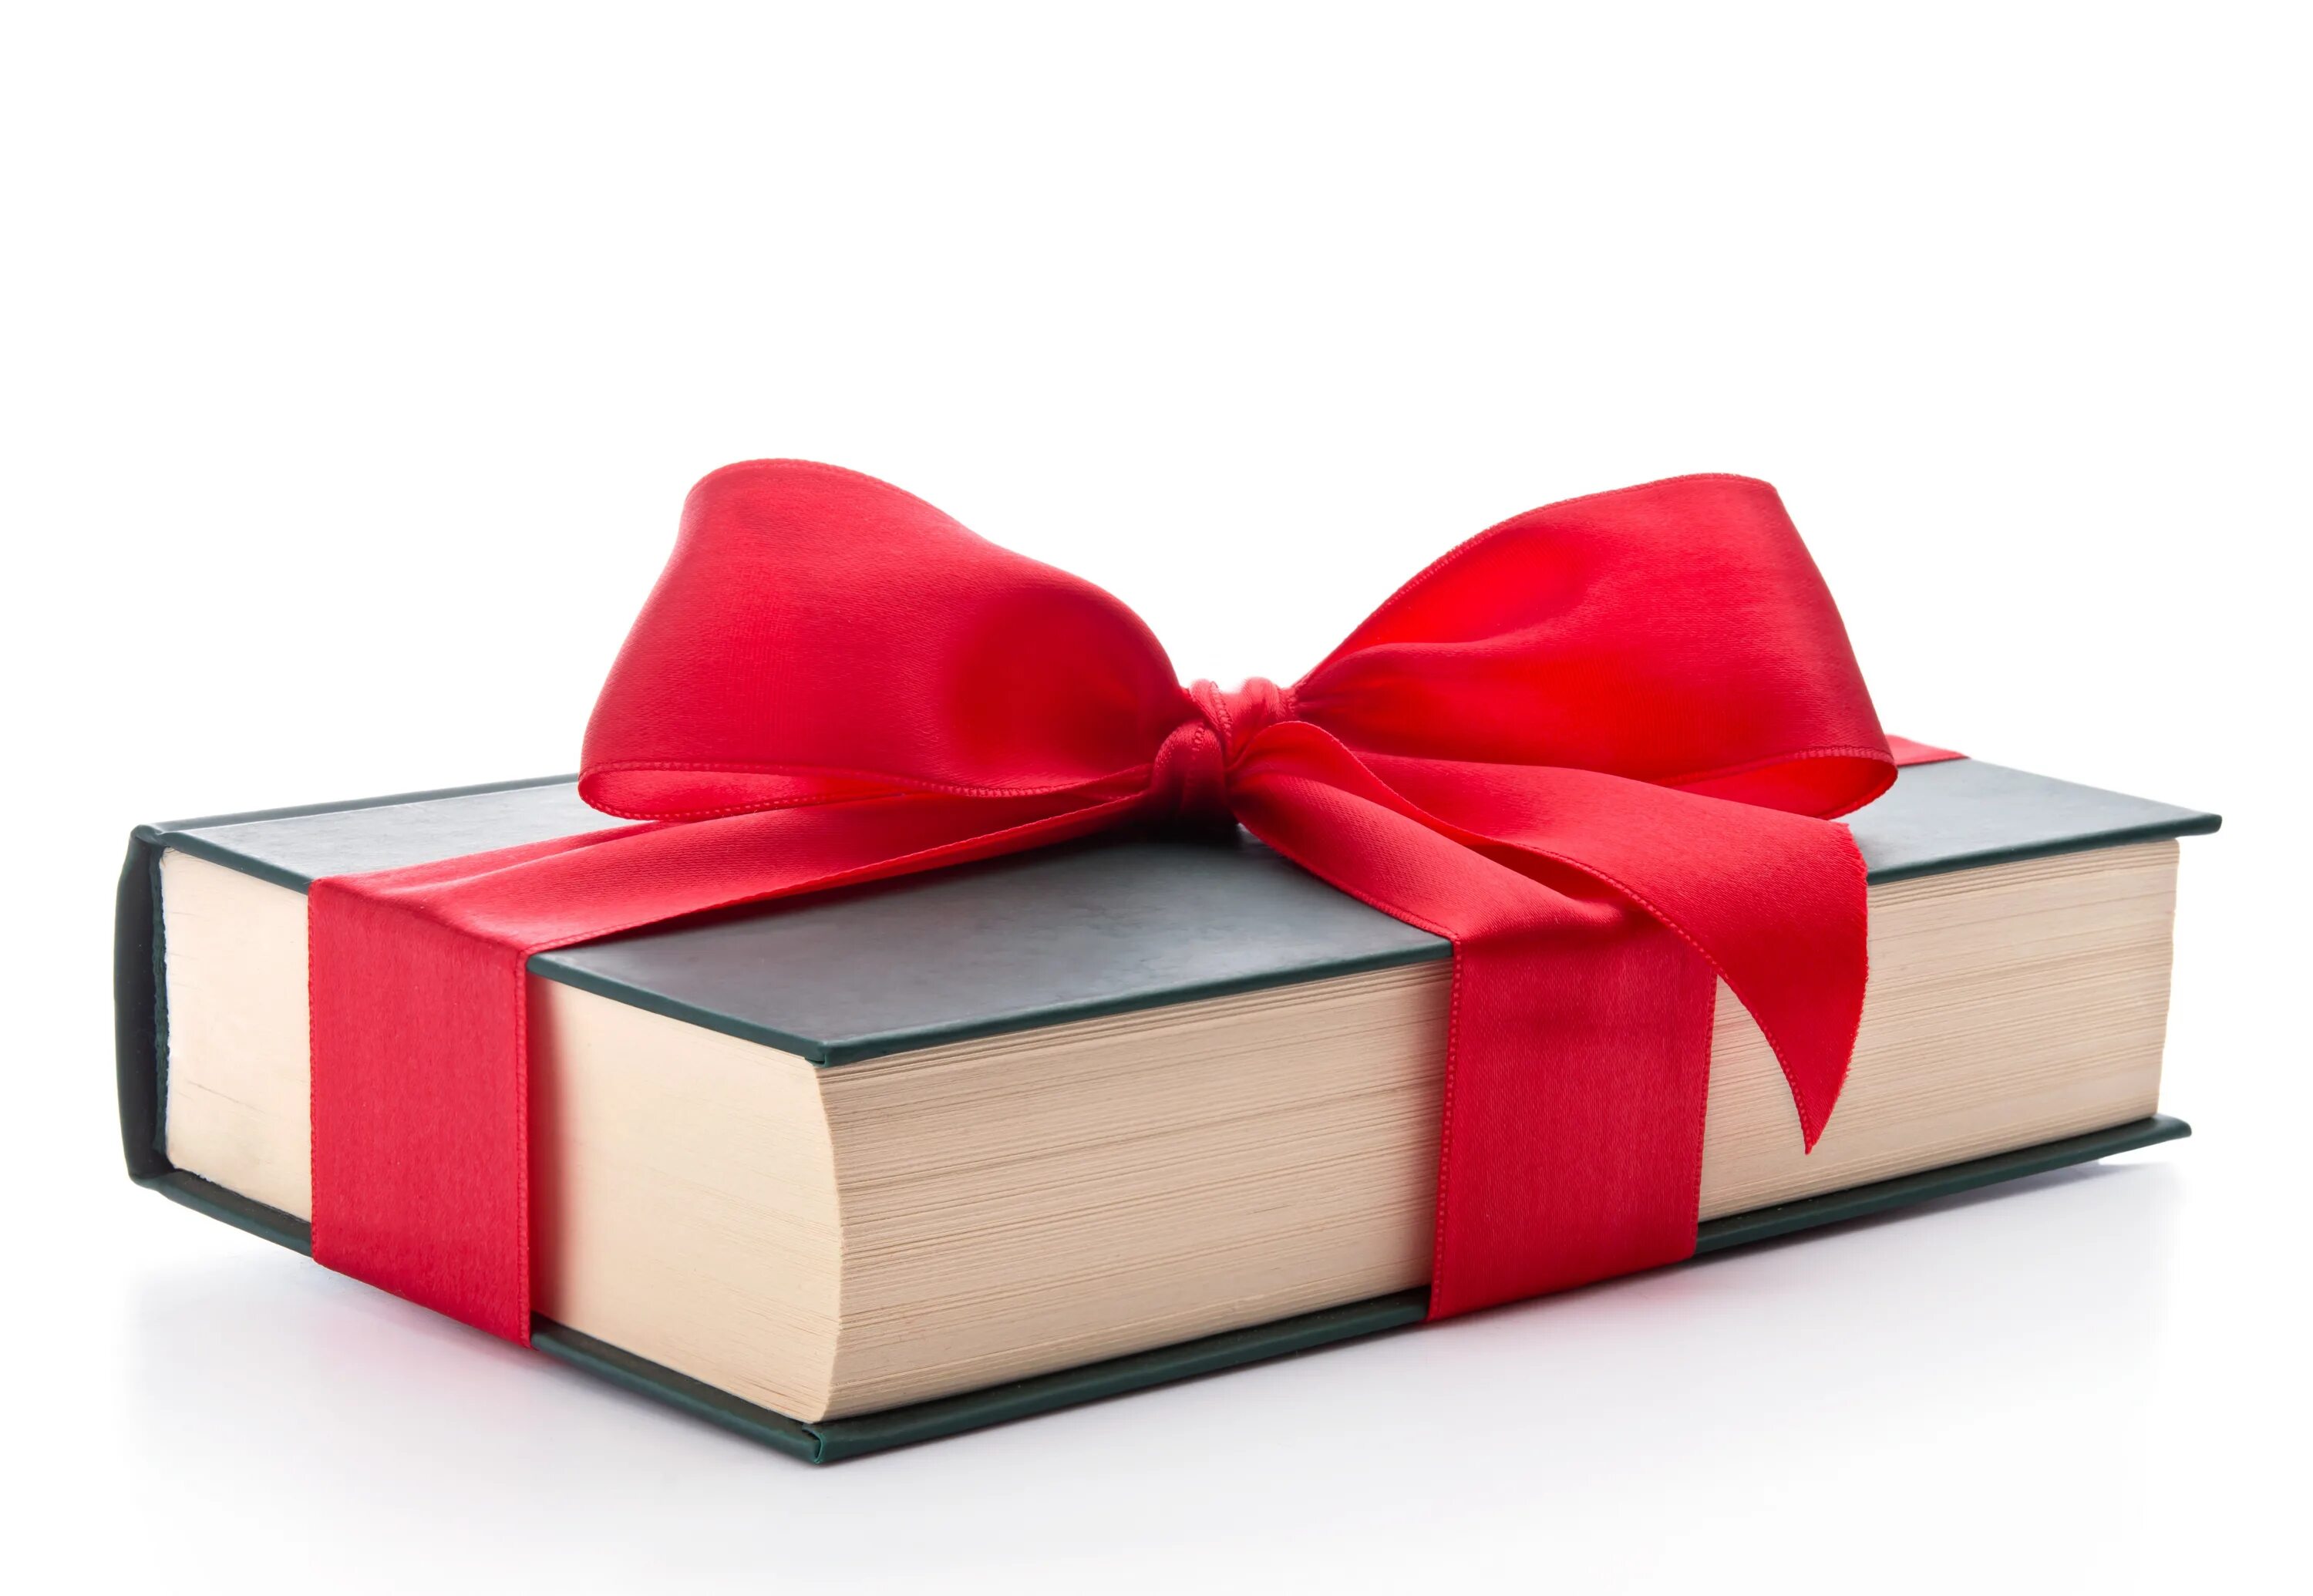 Книги ее подарок. Книга в подарок. Книжка в подарок. Книга с бантом. Книга хороший подарок.